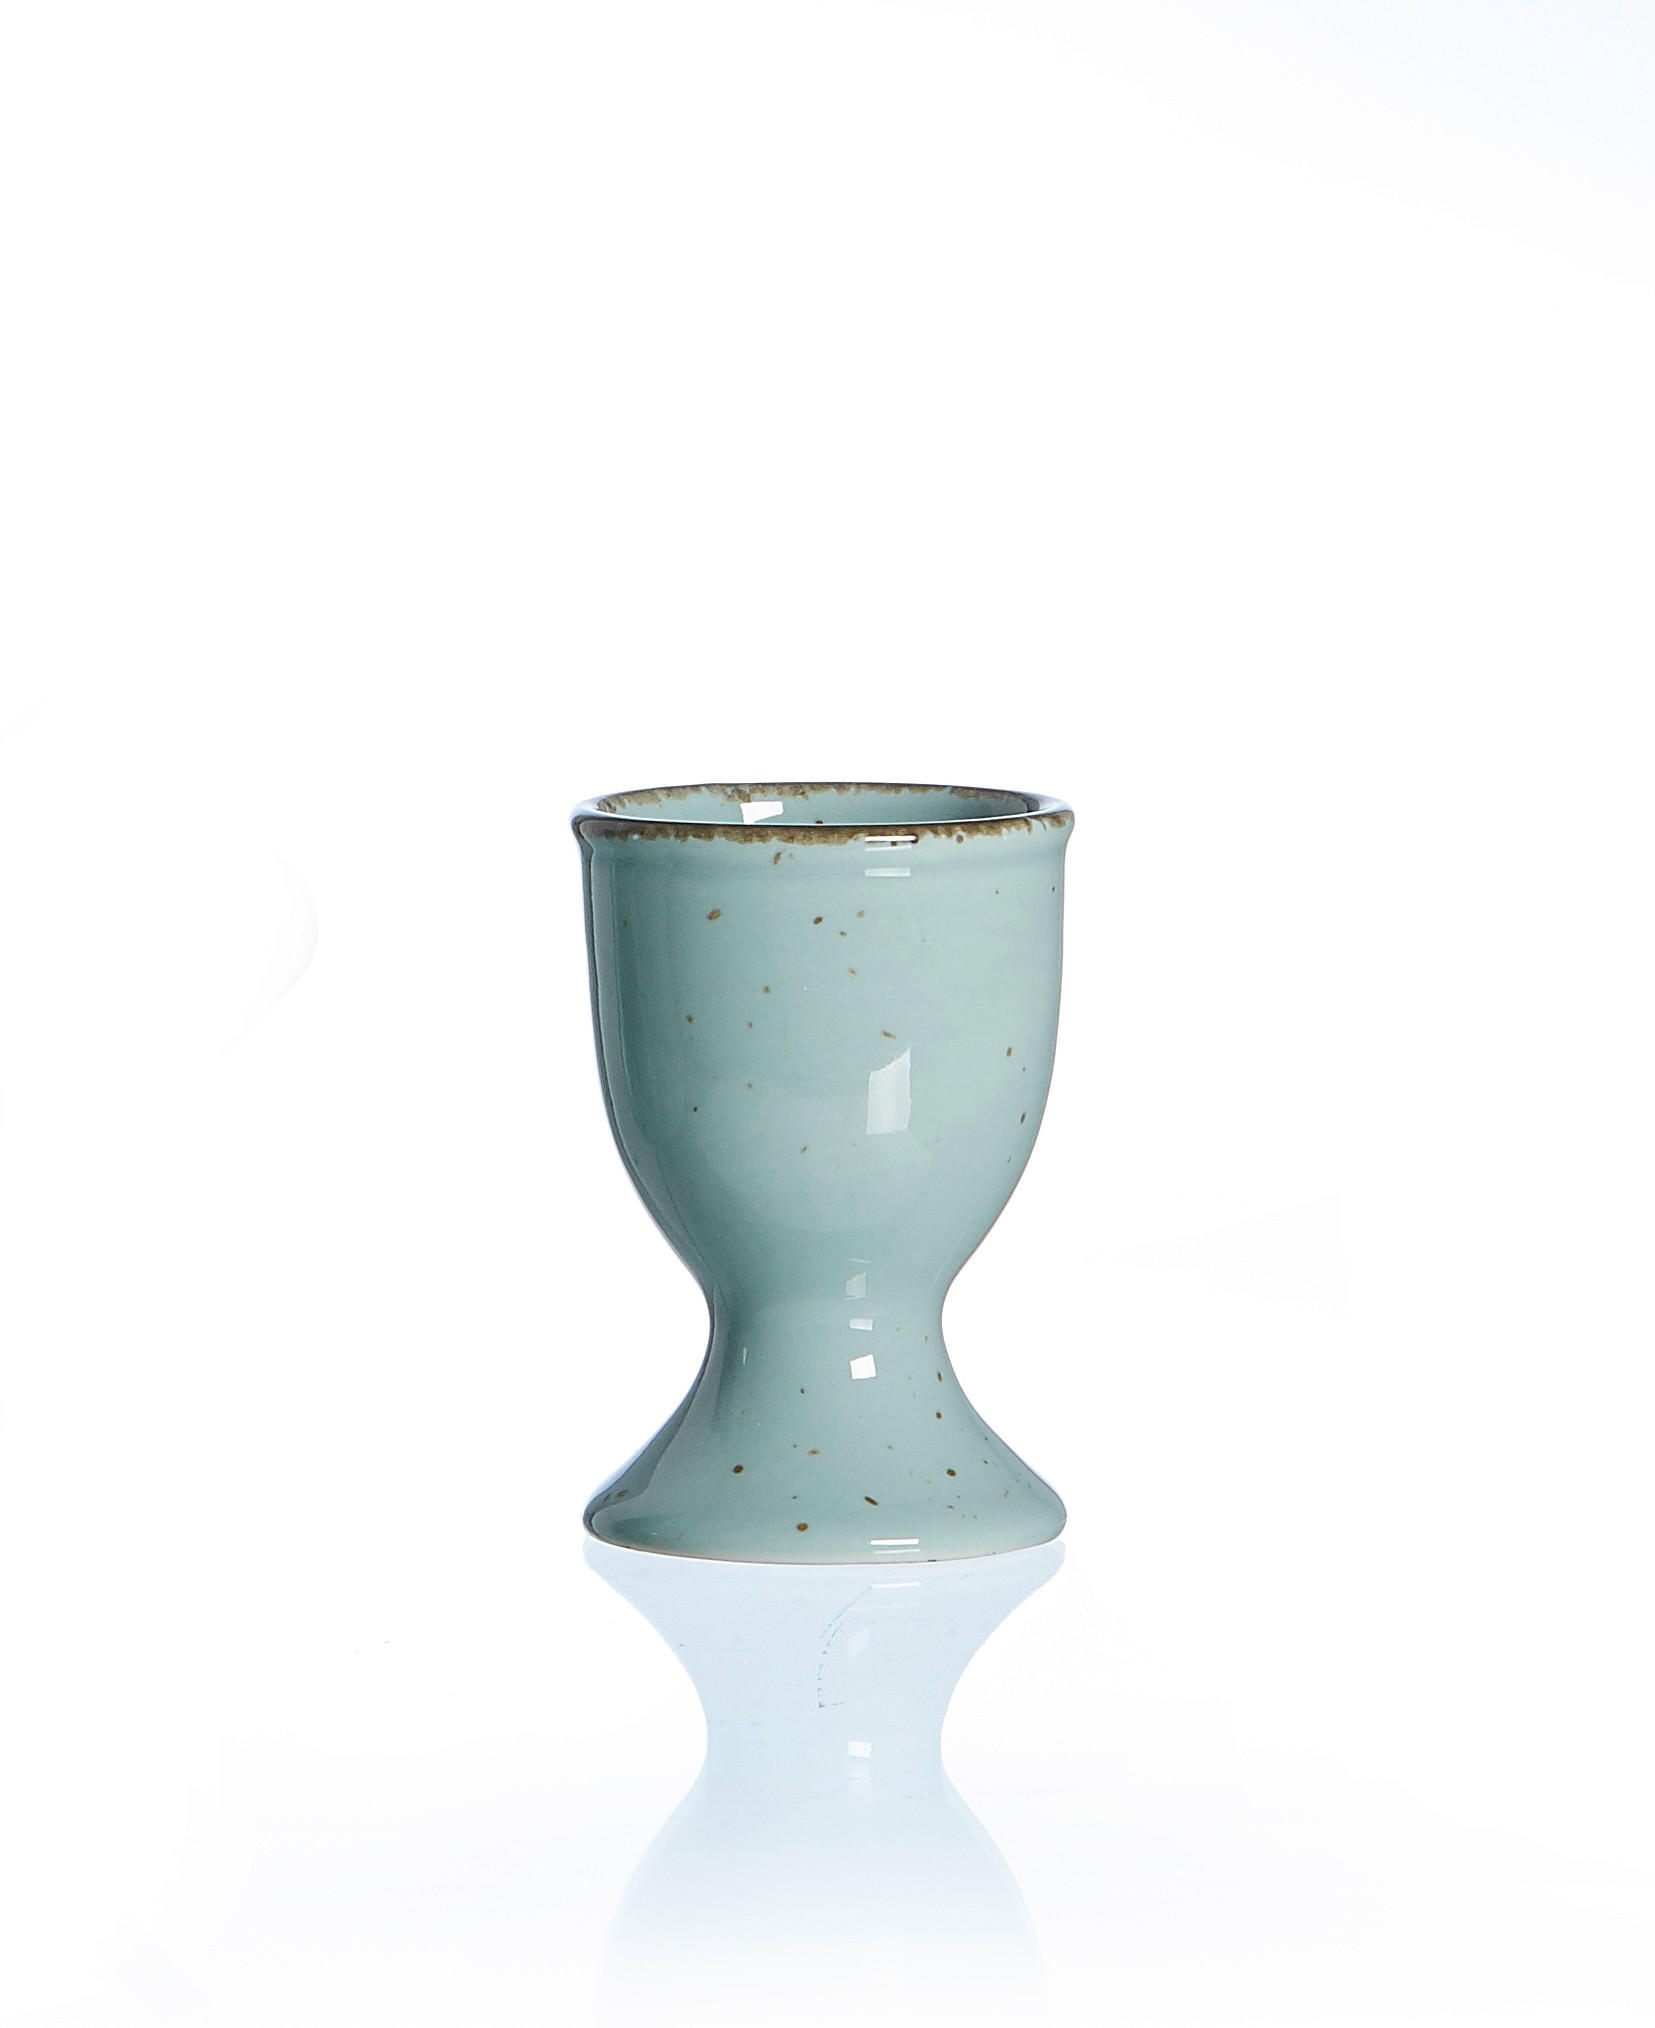 EIERBECHER Keramik Steinzeug  - Blau/Braun, Keramik (5/5/7cm) - Ritzenhoff Breker